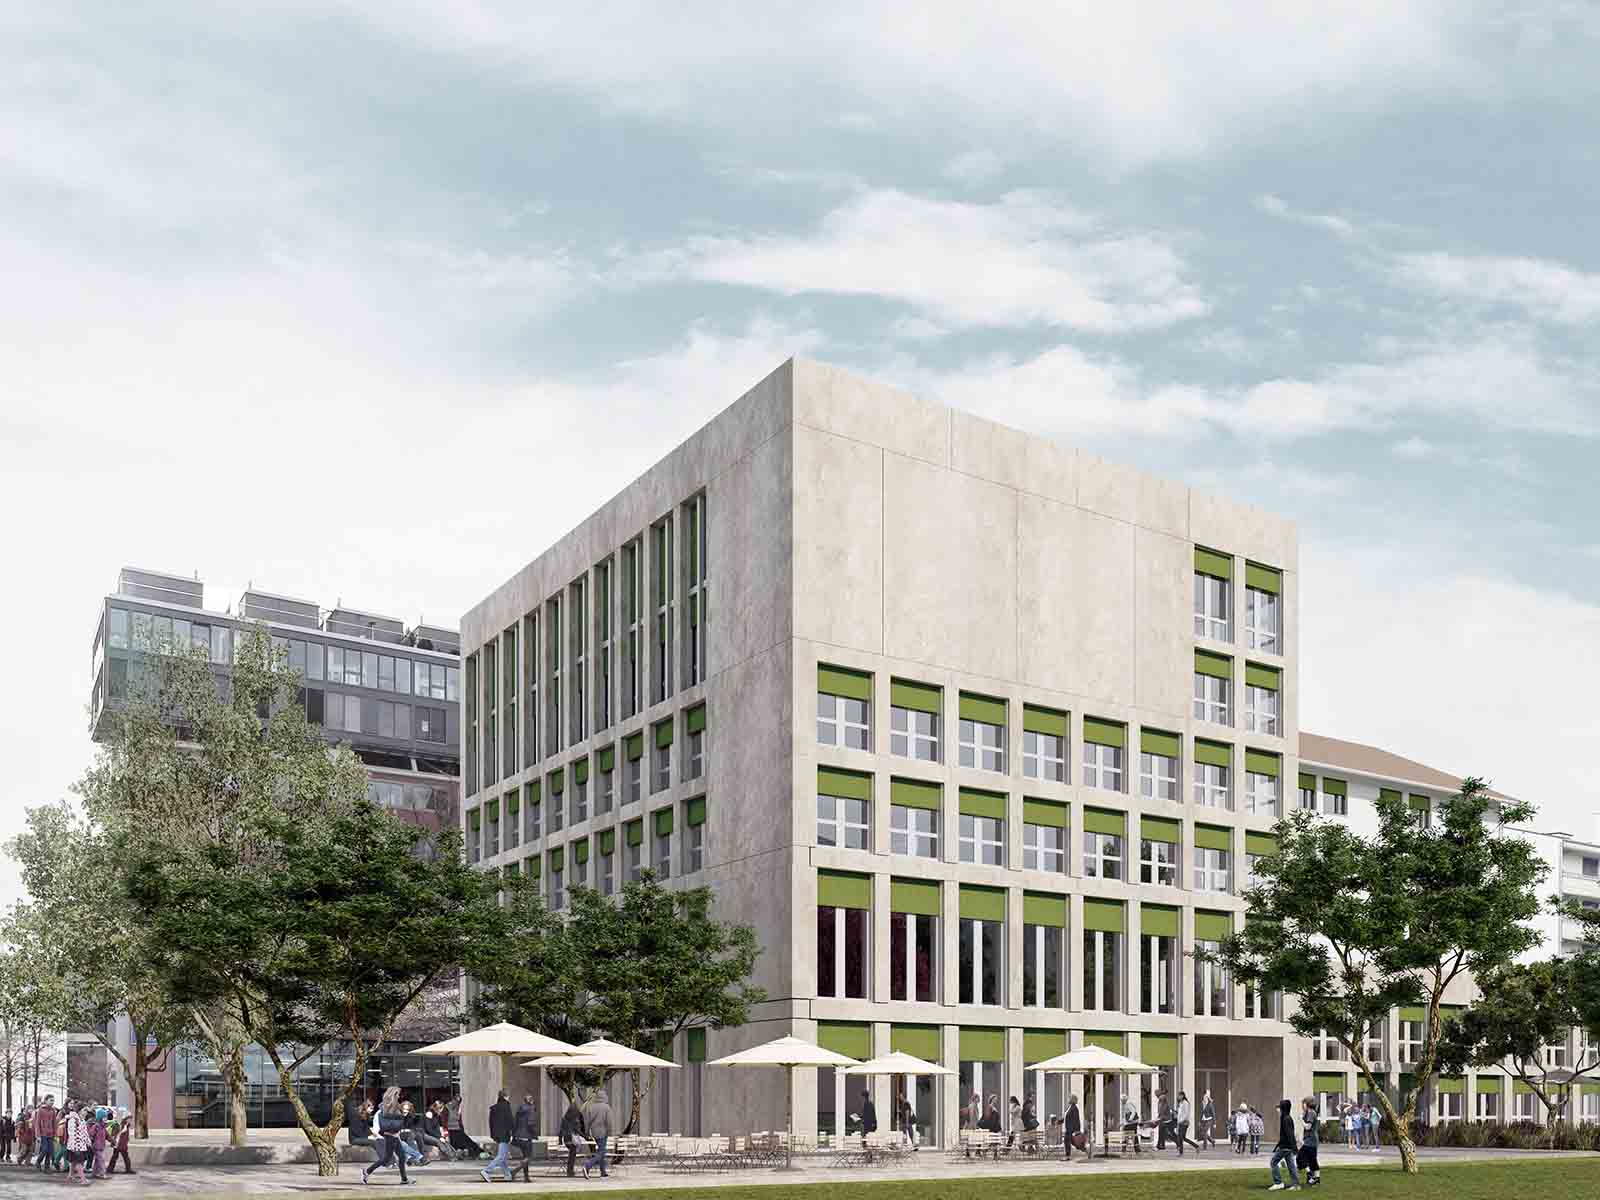 Anbau Schulhaus Schütze, wo die Pestalozzi-Bibliothek Zürich (PBZ) ab August 2019 einen neuen Standort haben wird.